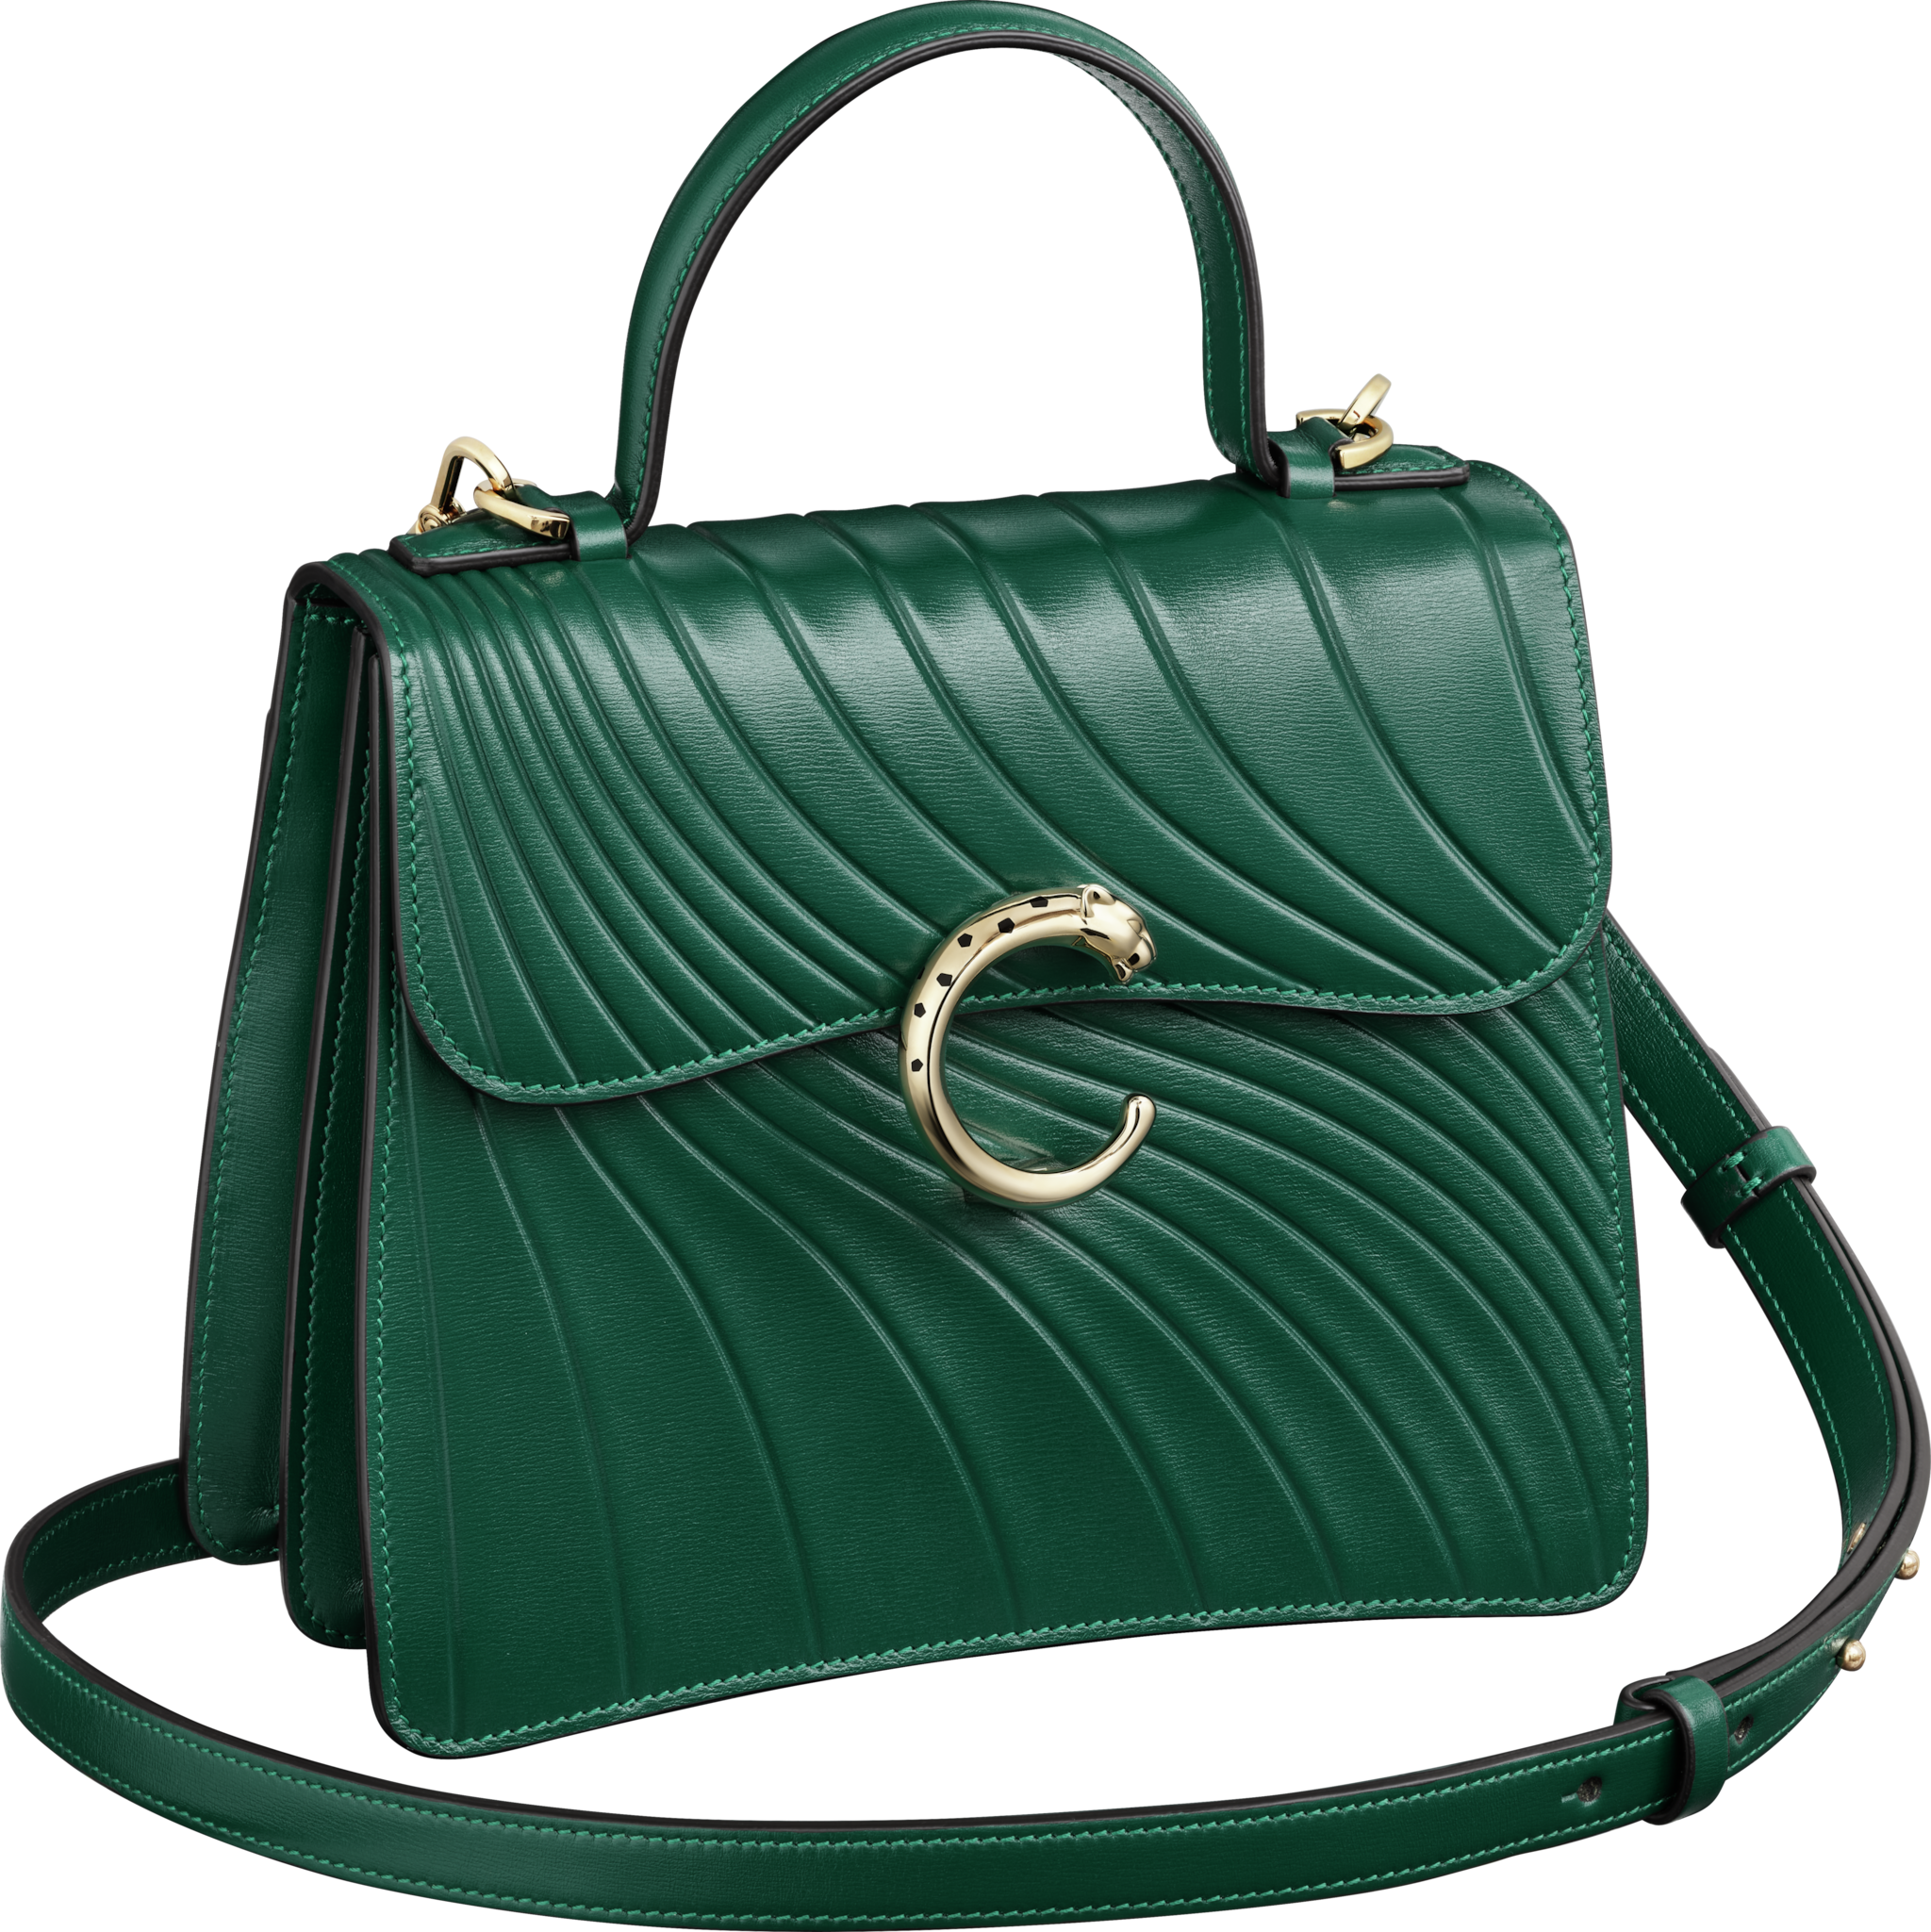 Handle bag small model, Panthère de CartierEmerald green calfskin, embossed Cartier signature motif, golden finish